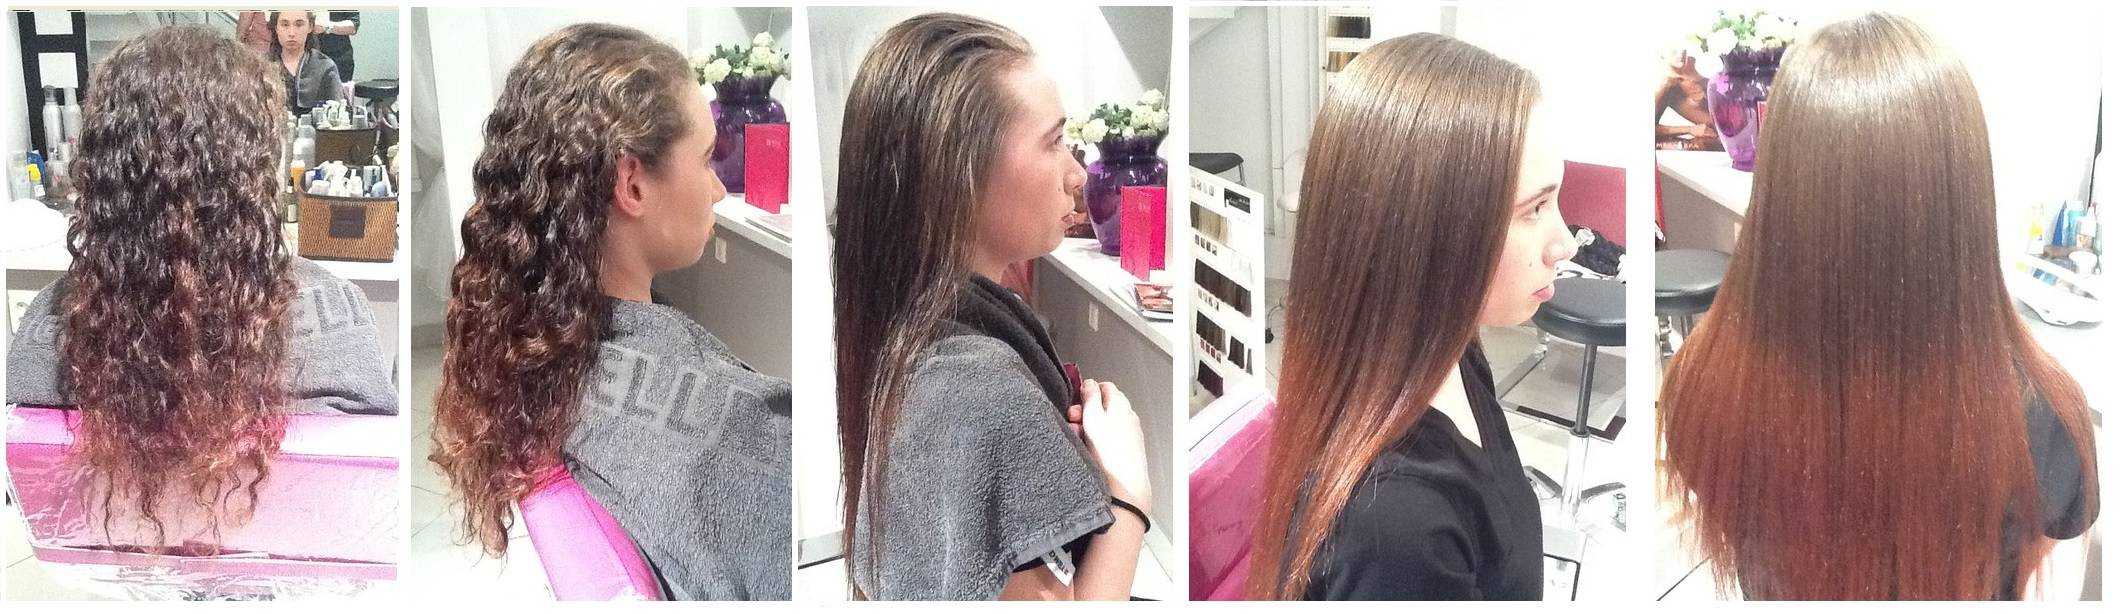 5 техник выпрямления волос. какую выбрать